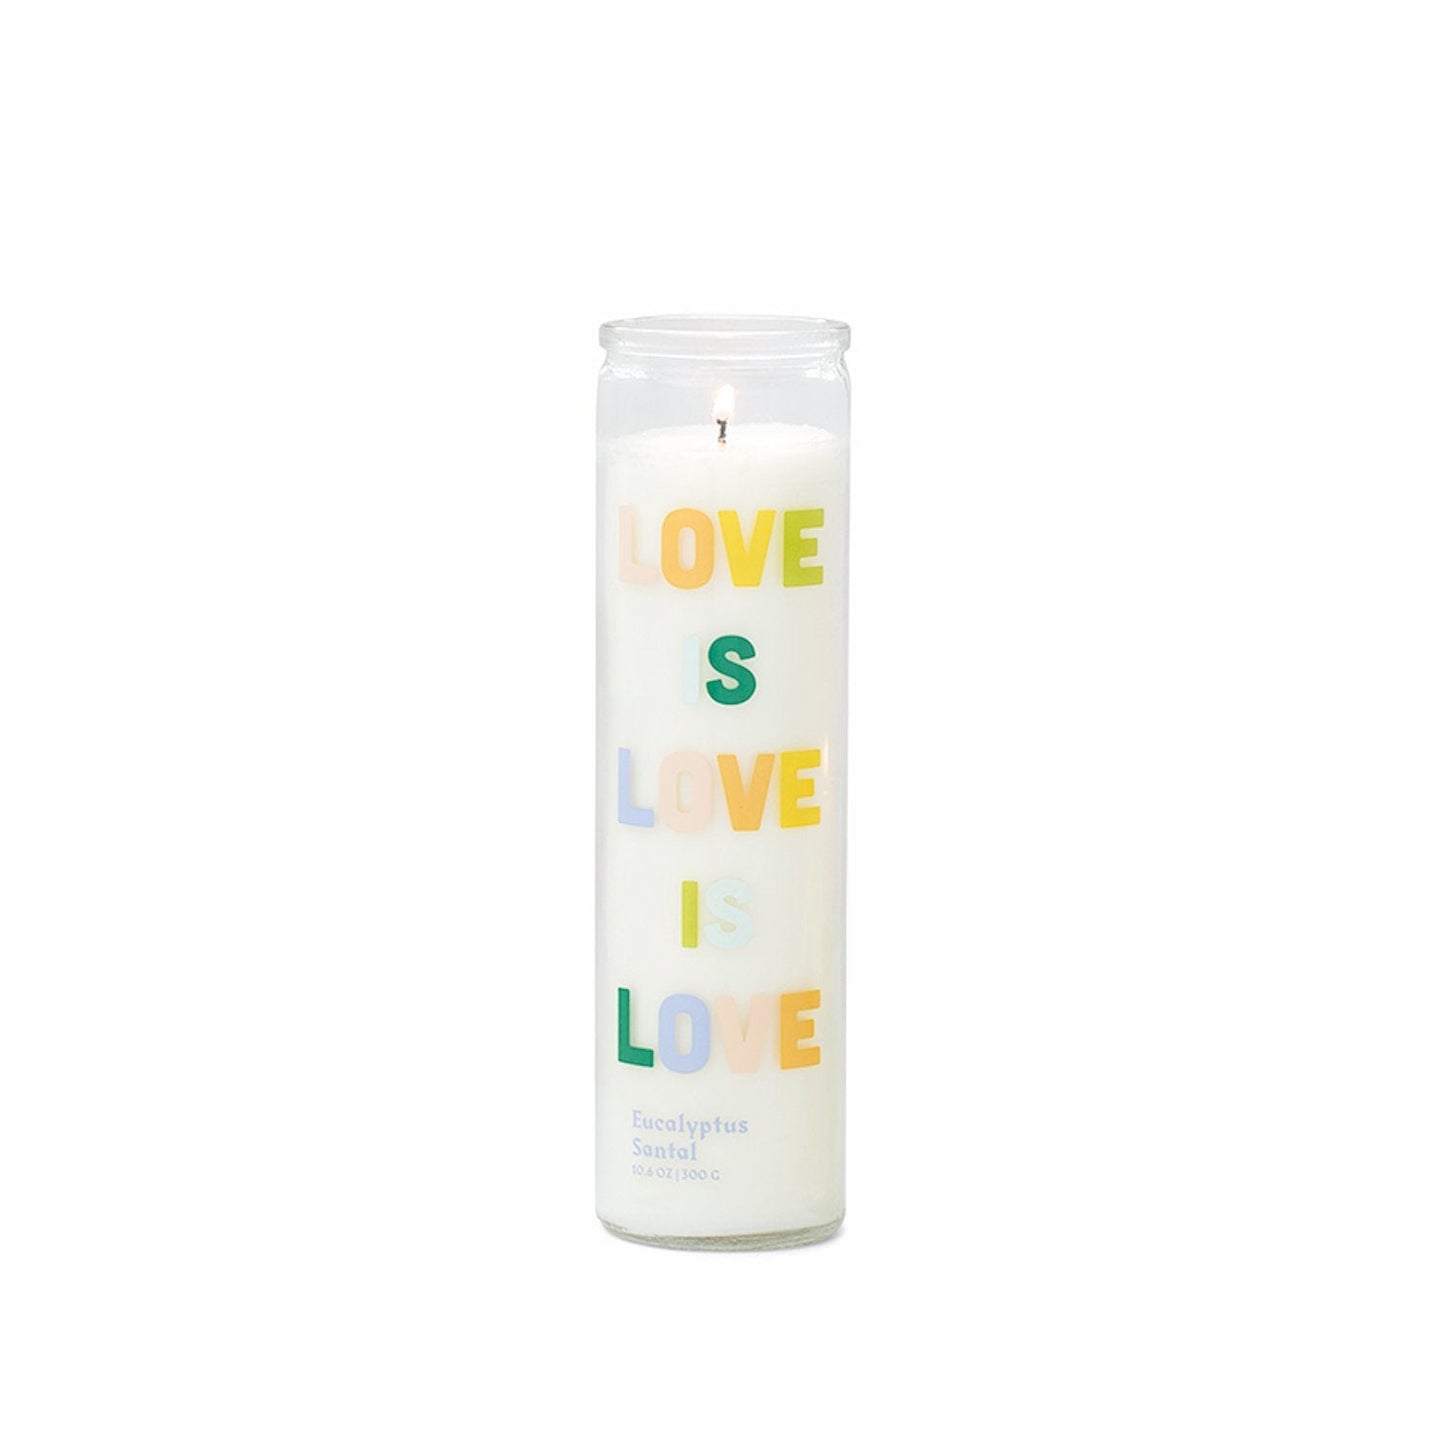 Spark Candle - Love Is Love Is Love - Eucalyptus Santal (300g)